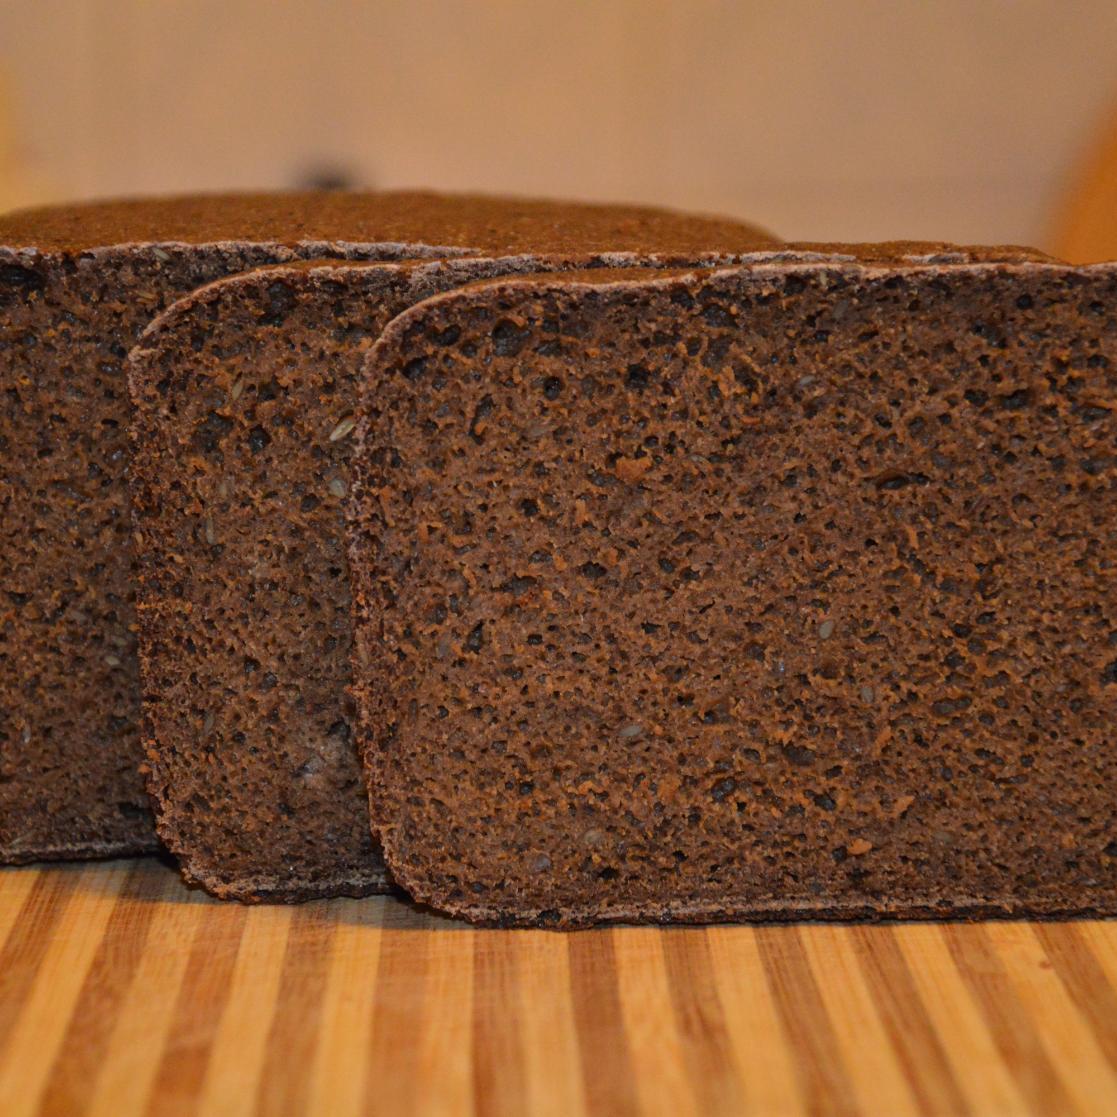 Пшеничный хлеб на ржаной закваске в домашних условиях в духовке рецепт с фото